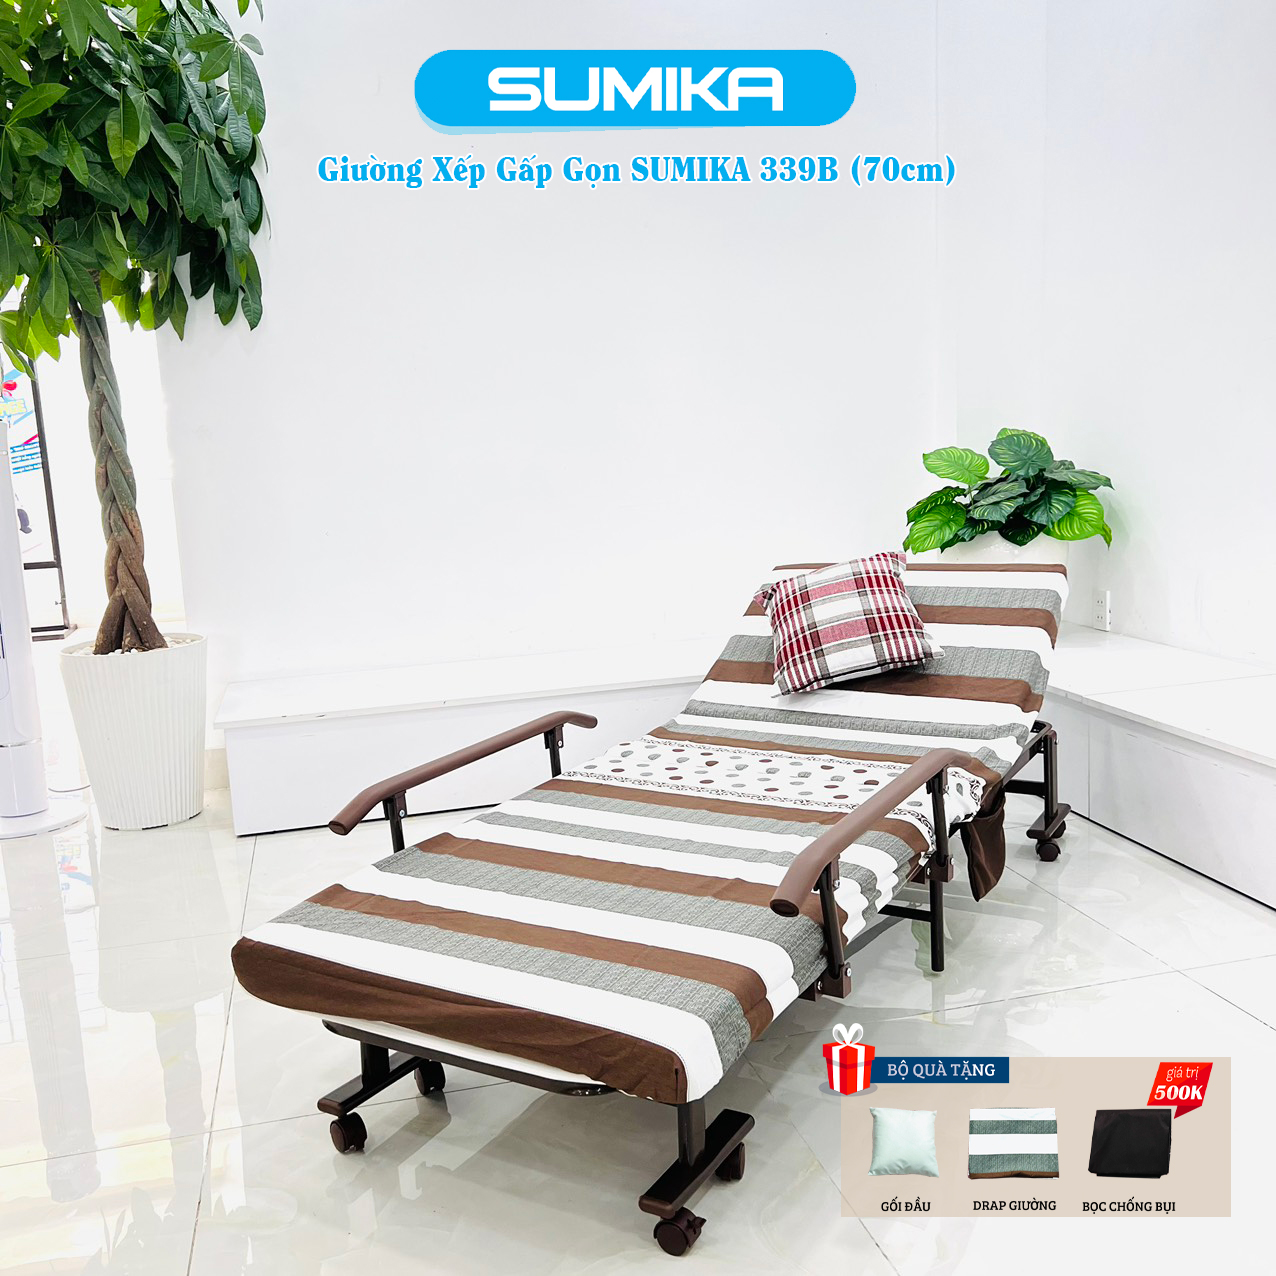 Giường gấp xếp gọn đa năng SUMIKA 339B, rộng 70cm